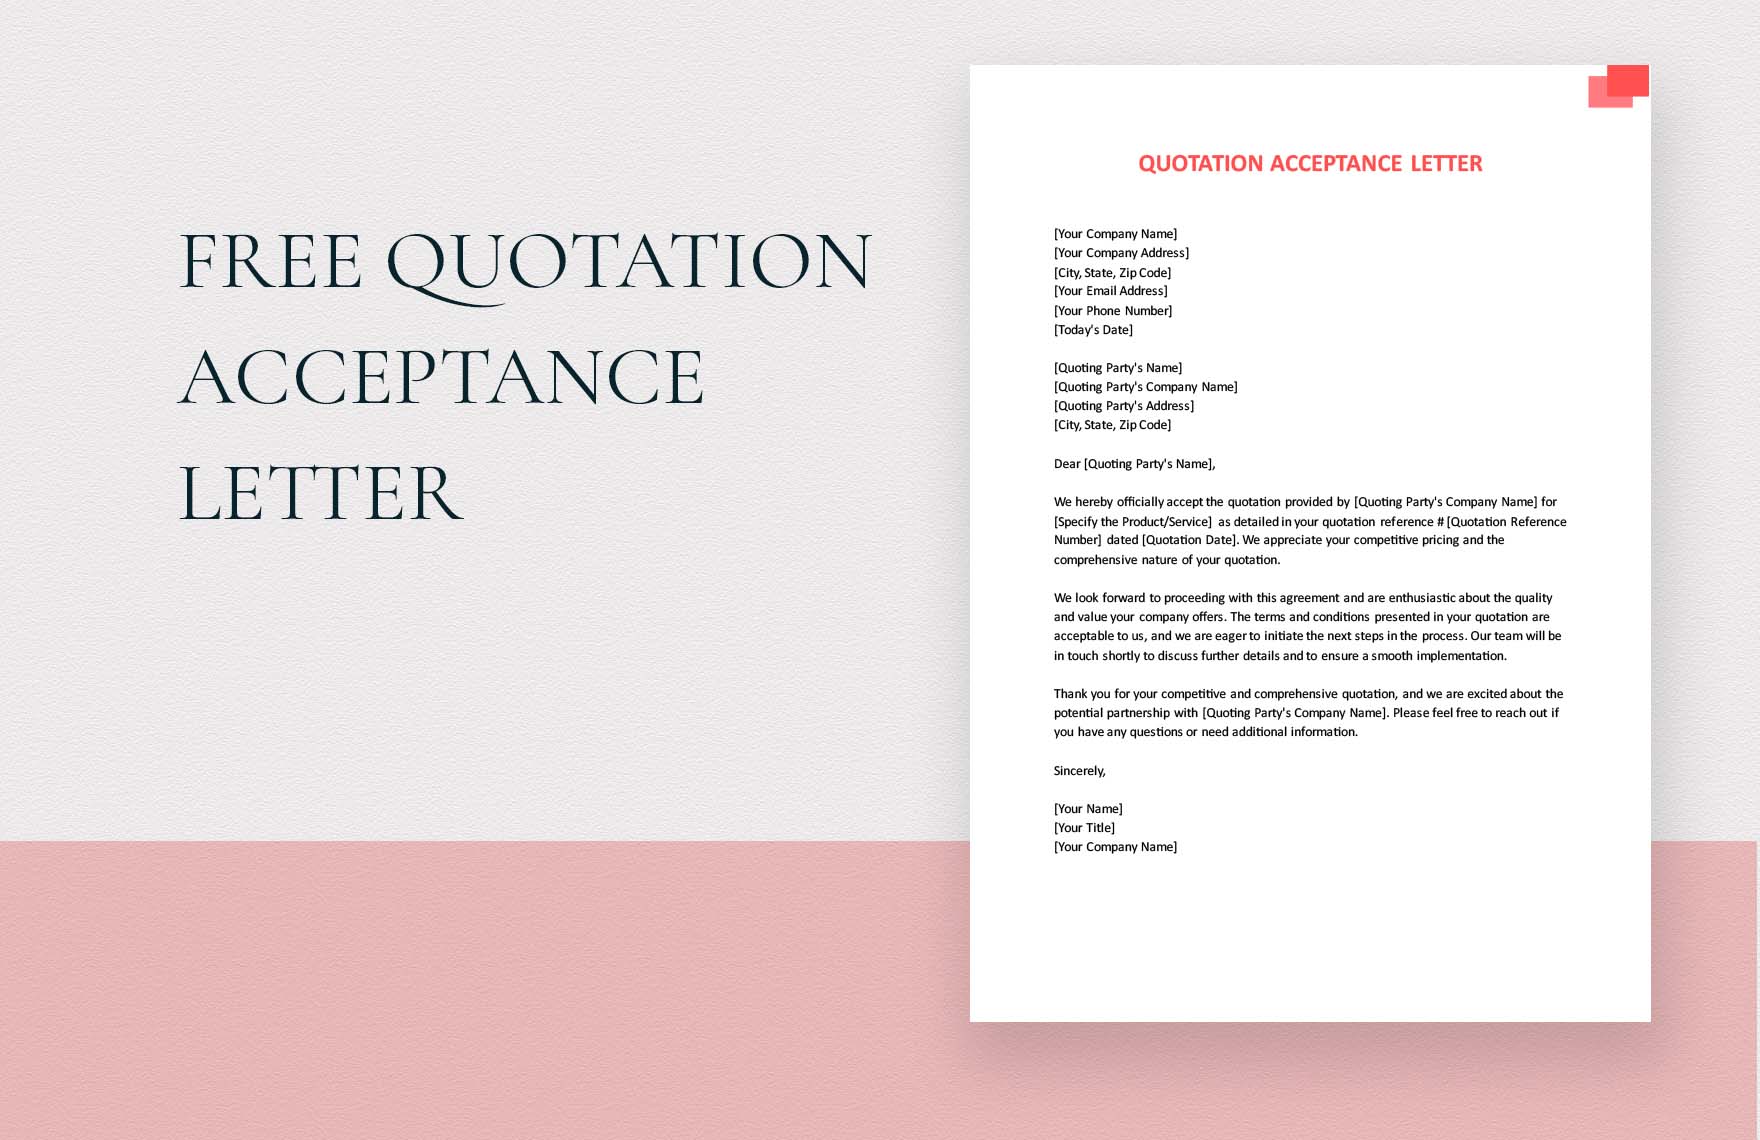 Quotation Acceptance Letter